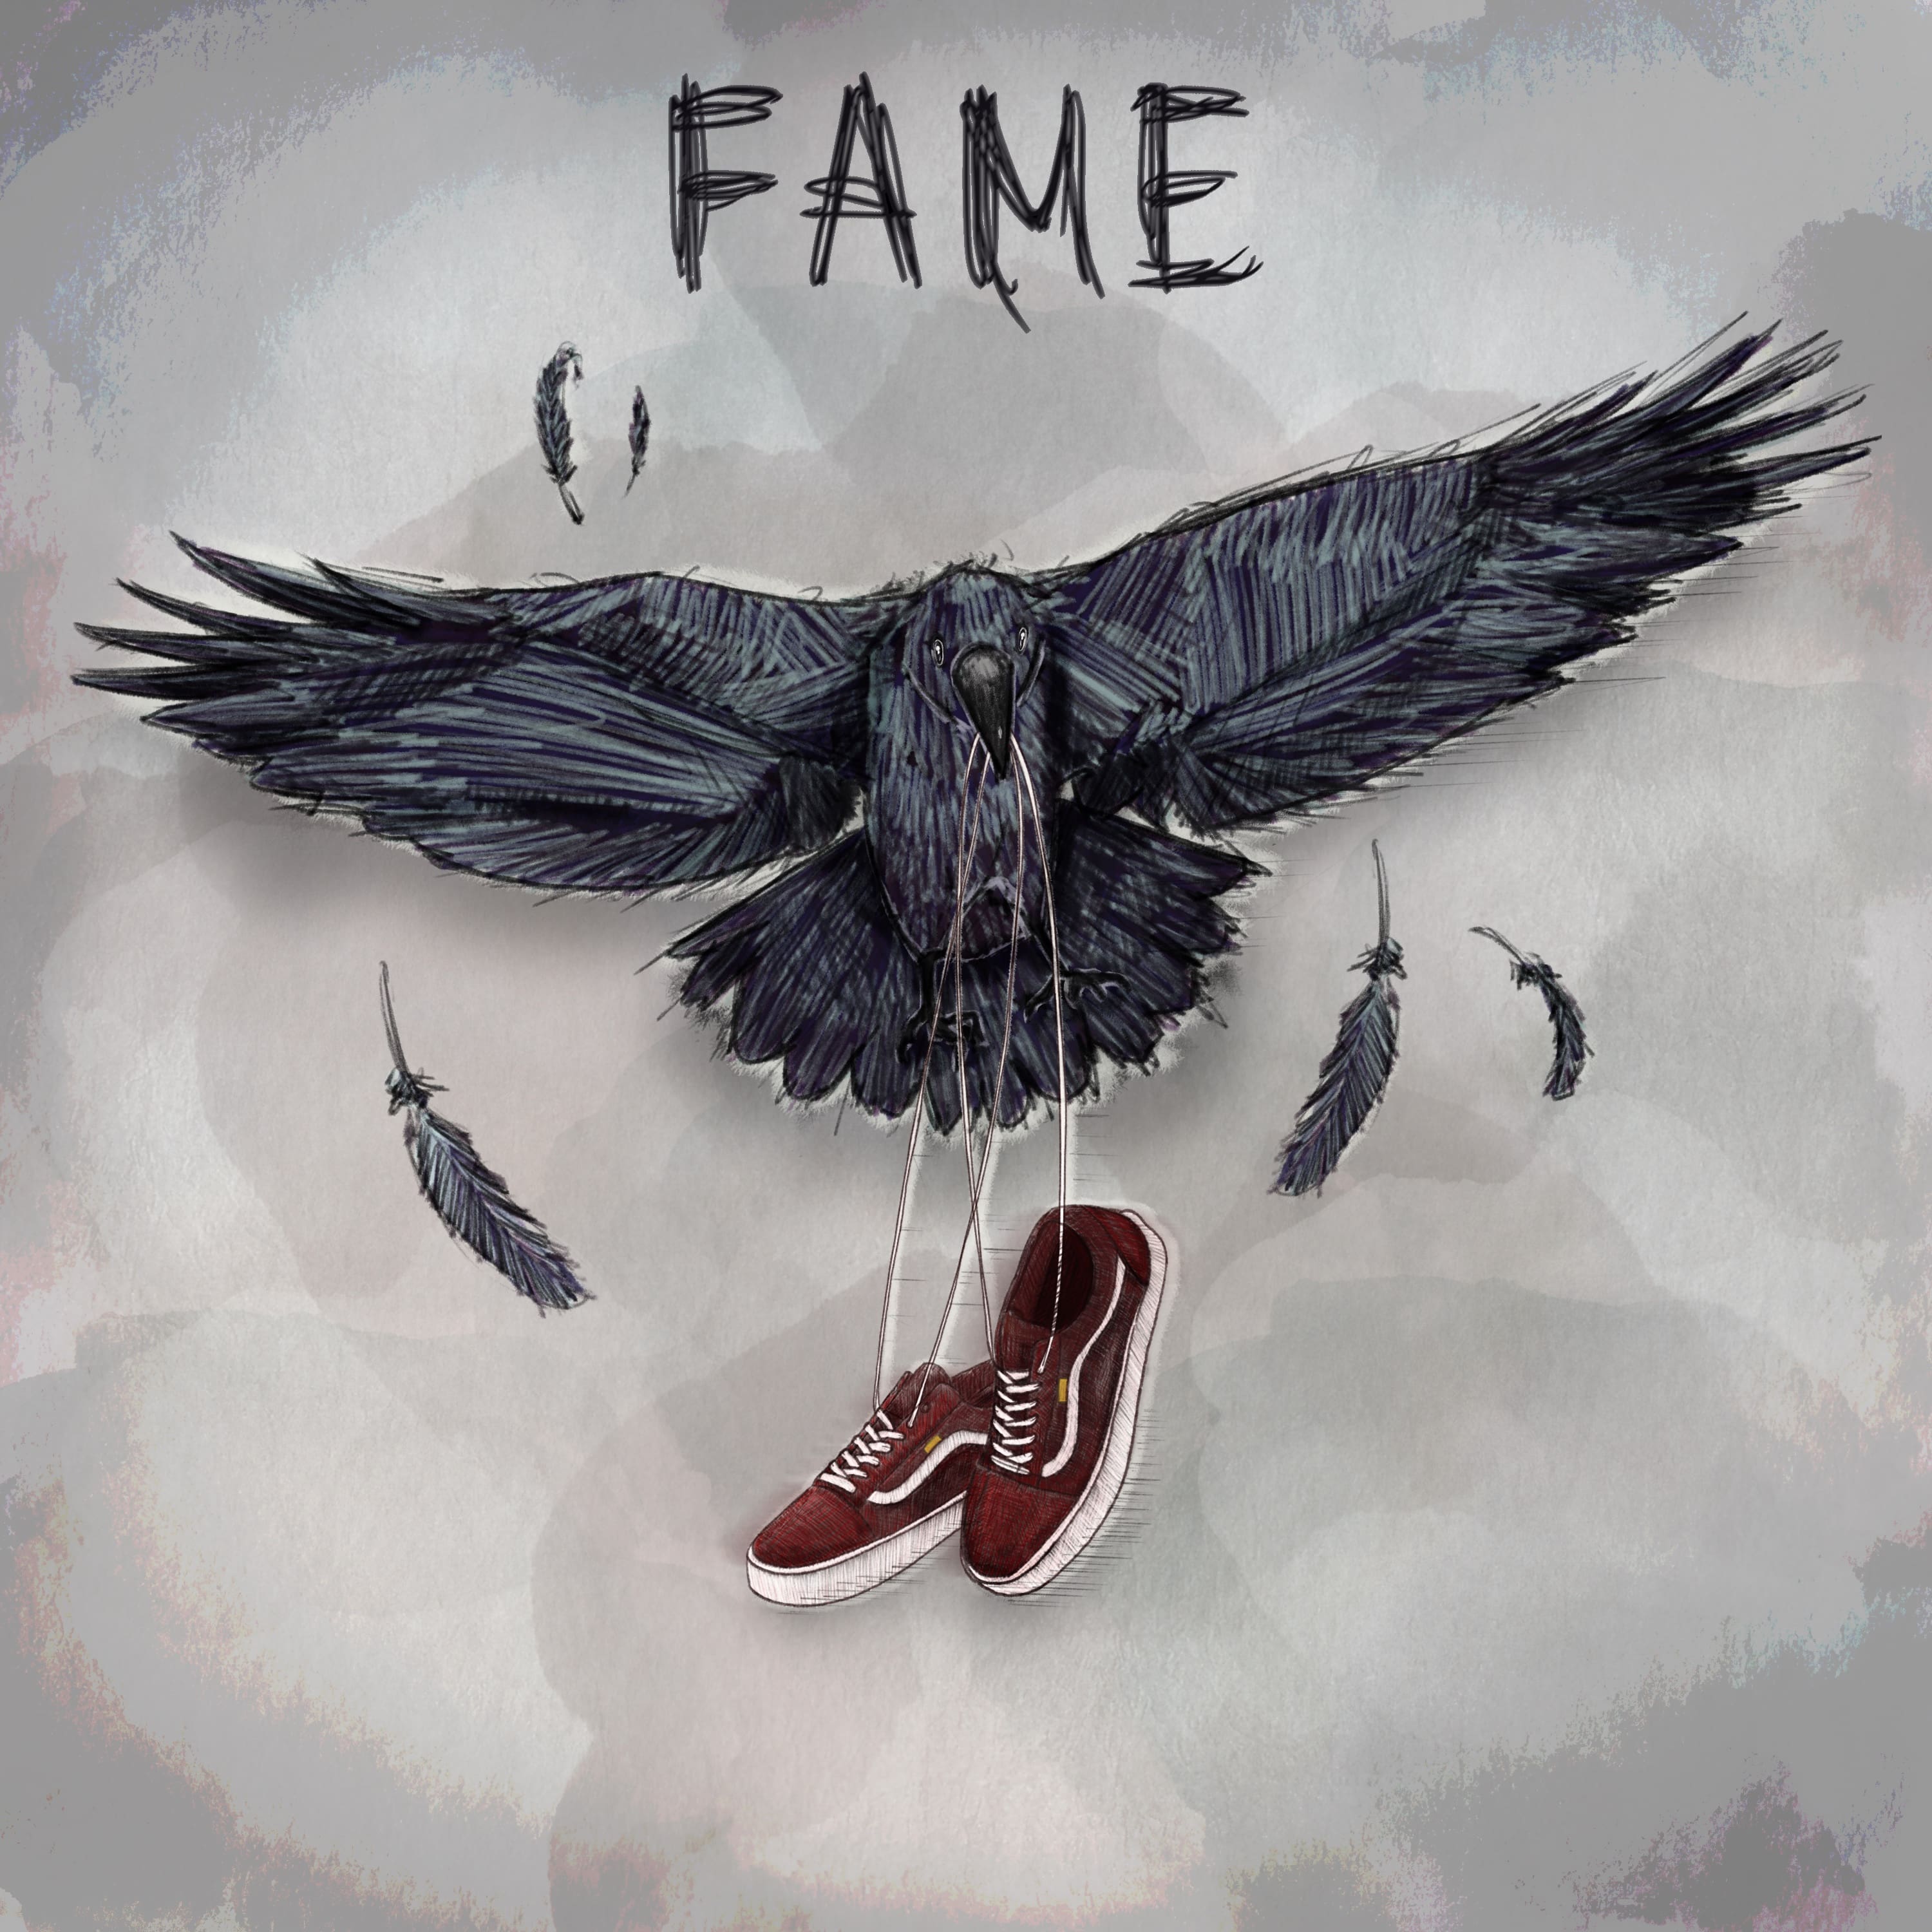 Fame, il nuovo ep degli Urbania [Recensione] 3